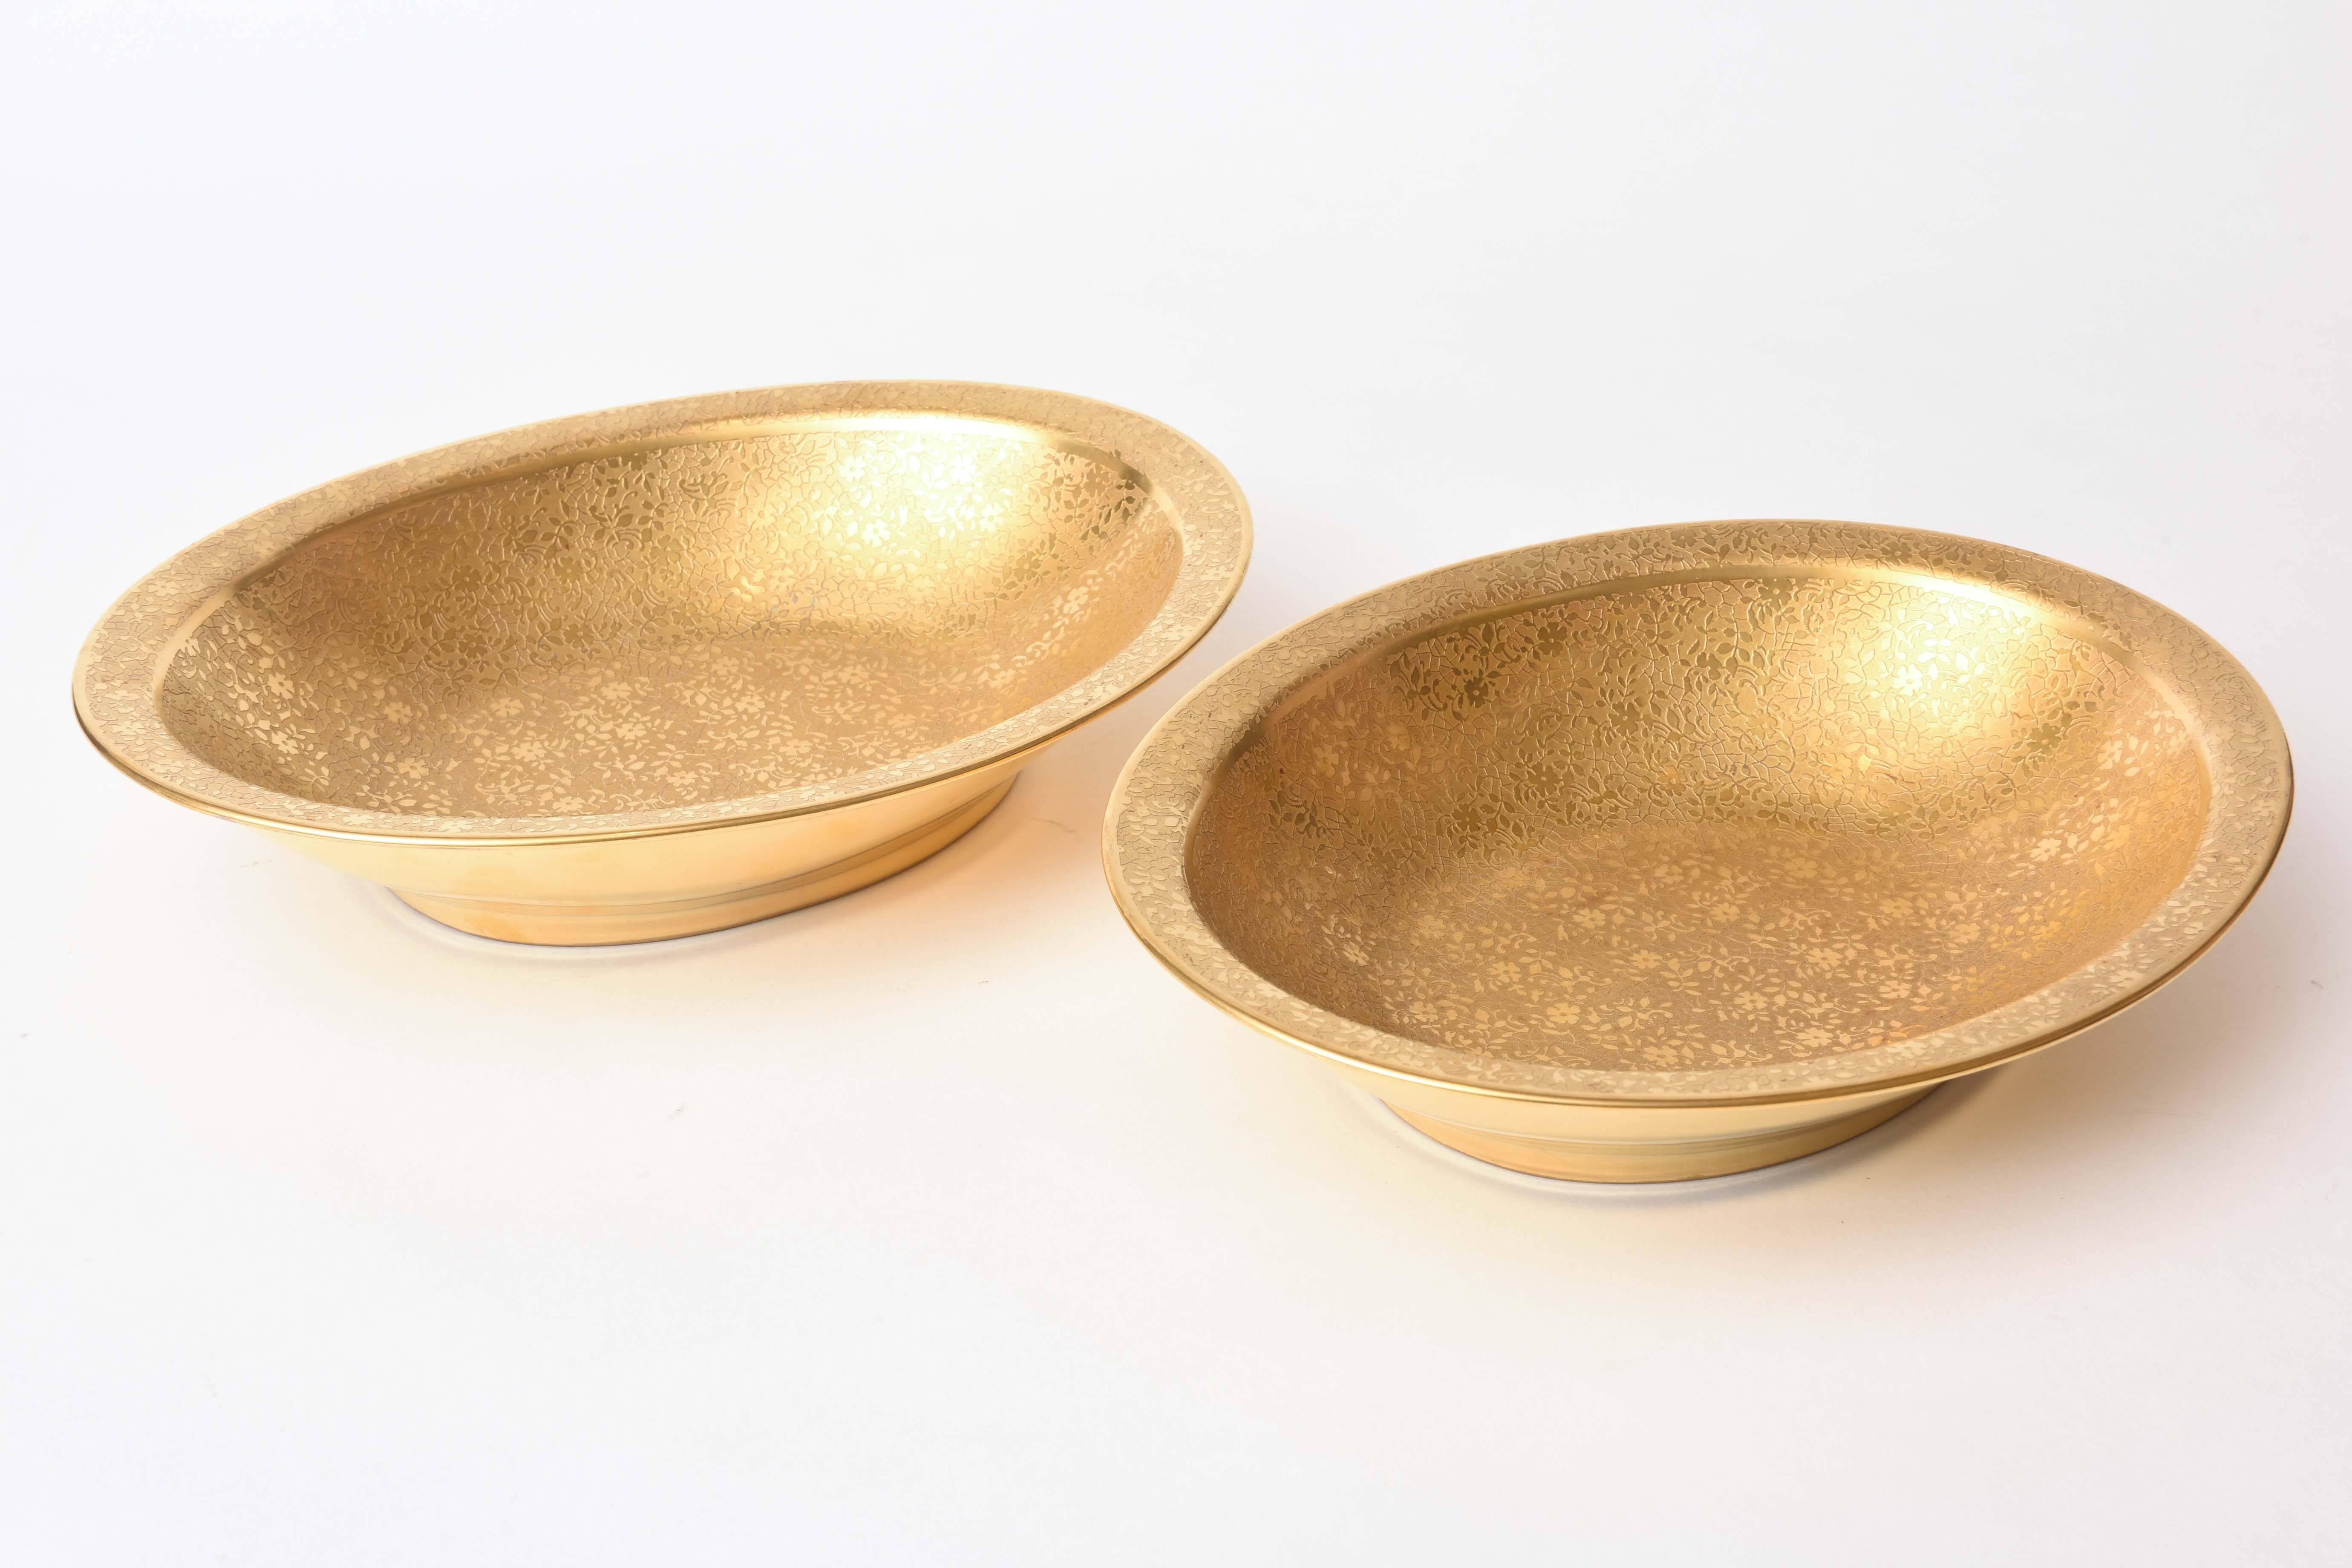 Ein Paar Servierschüsseln aus Porzellan mit 24-karätiger Ätzgoldauflage. Antik und in hervorragendem Zustand. Perfekt für die Festtagstafel oder einfach schön zum Ausstellen.